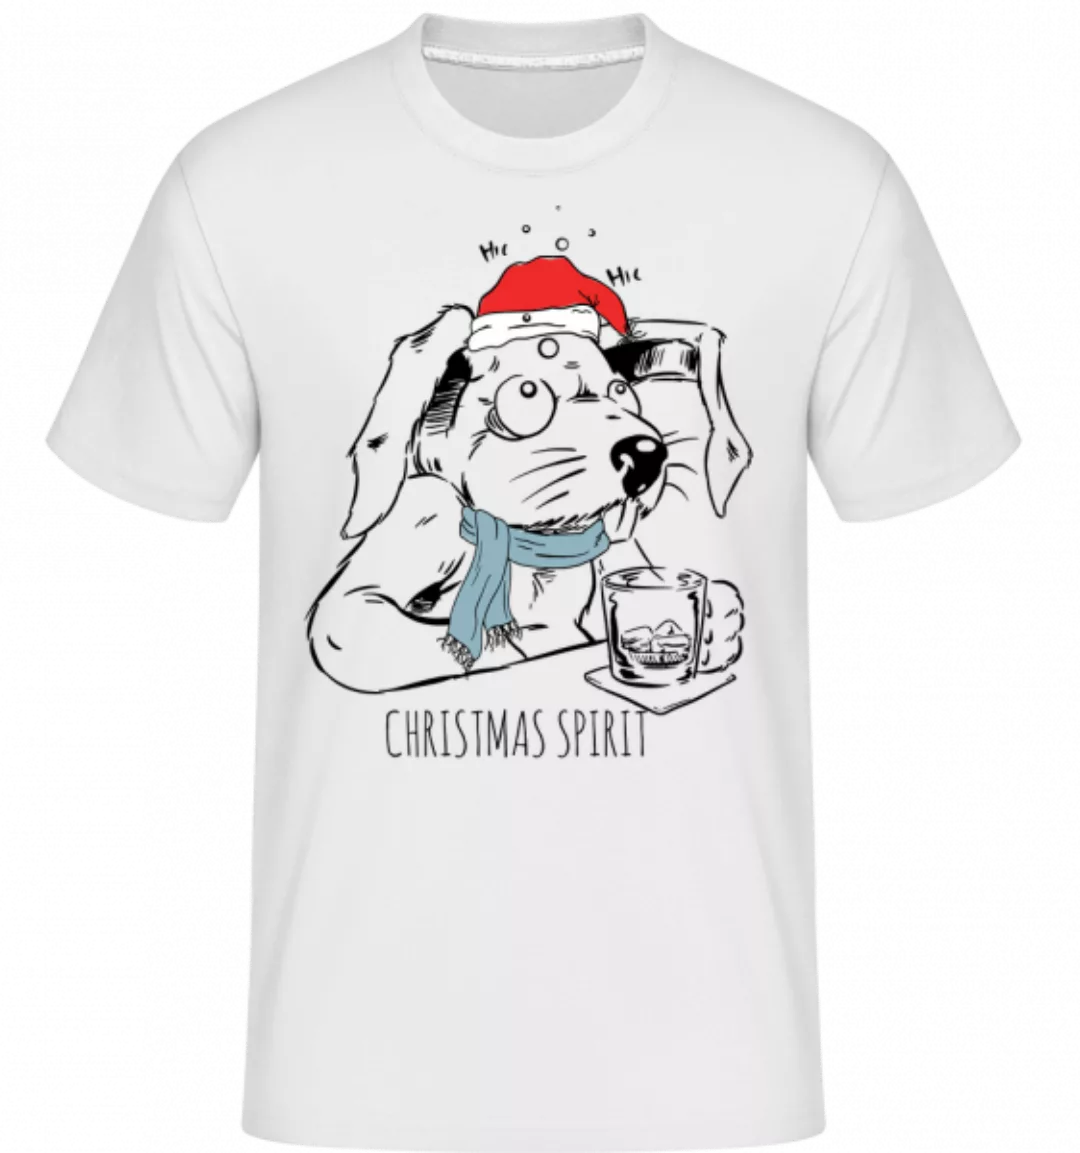 Weihnachtszeit · Shirtinator Männer T-Shirt günstig online kaufen